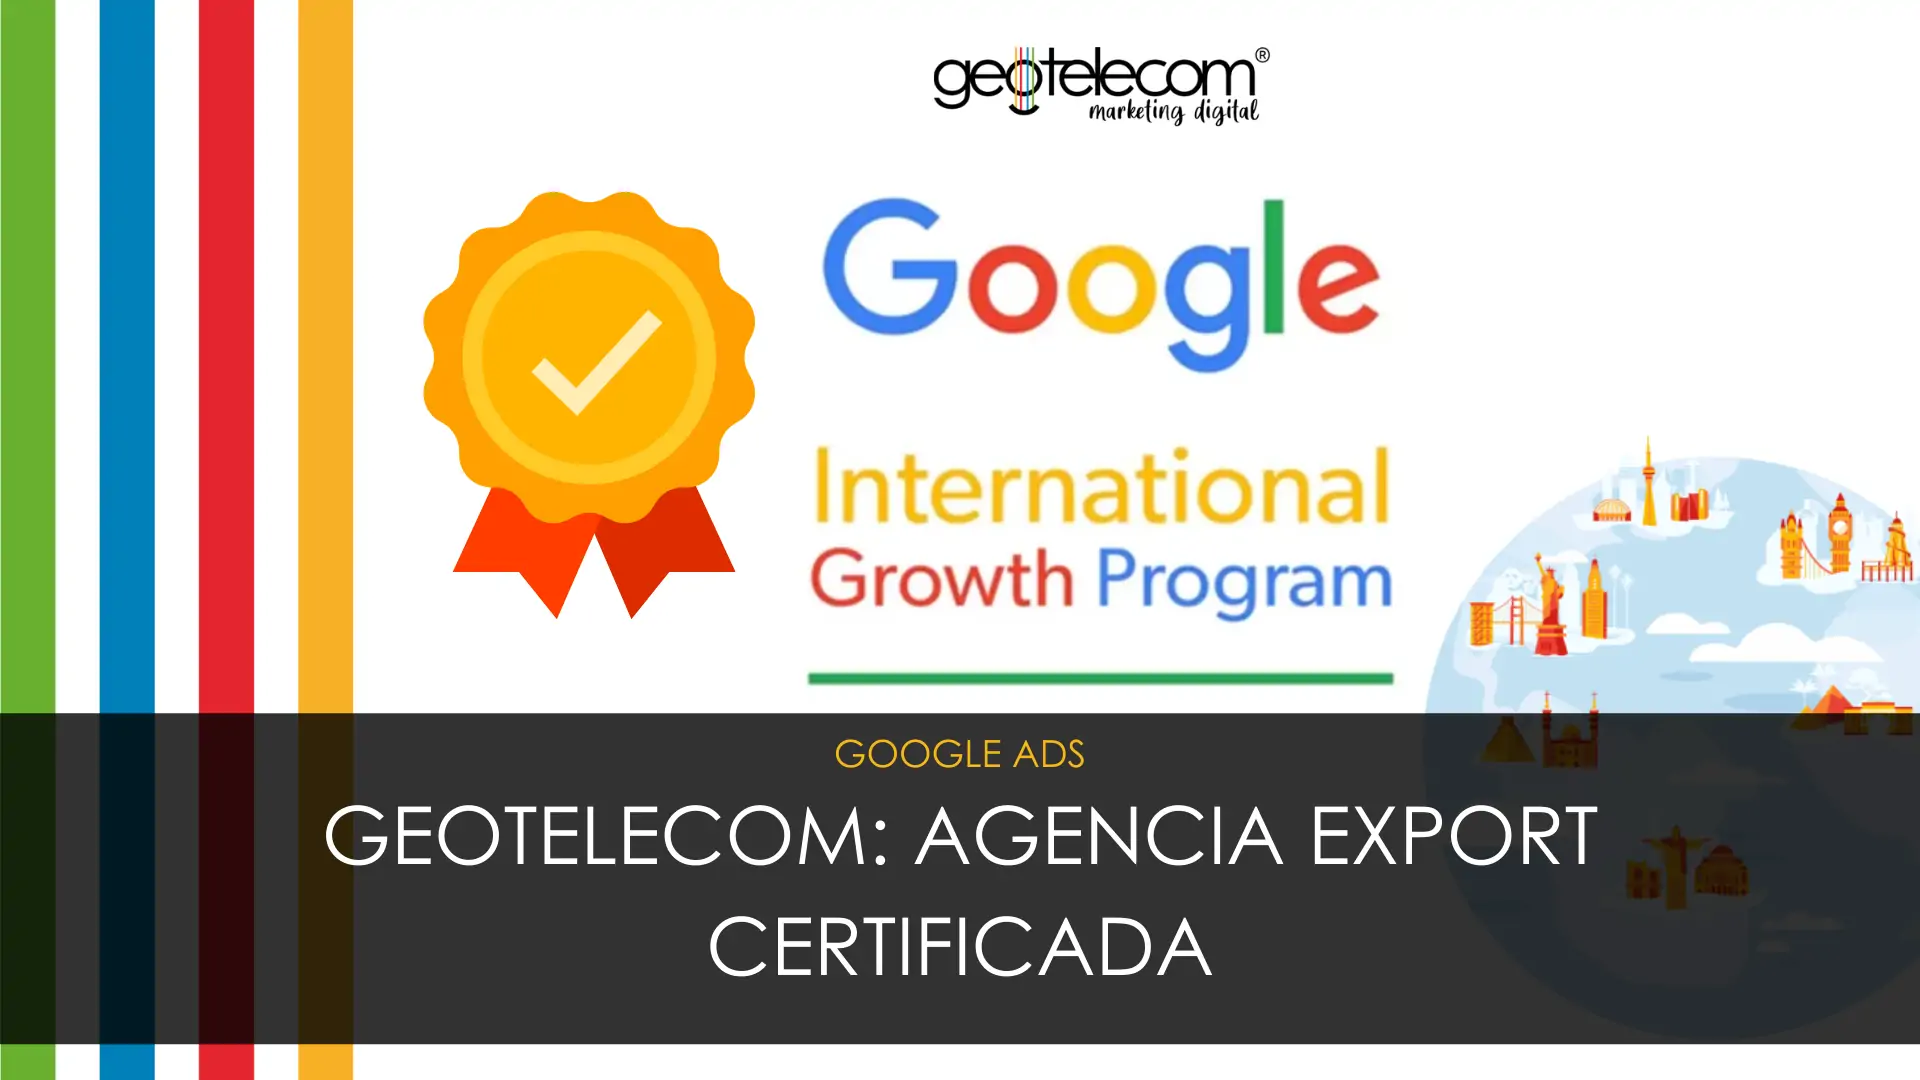 Geotelecom, agencia ‘Export’ certificada en el Google Partner International Growth Program